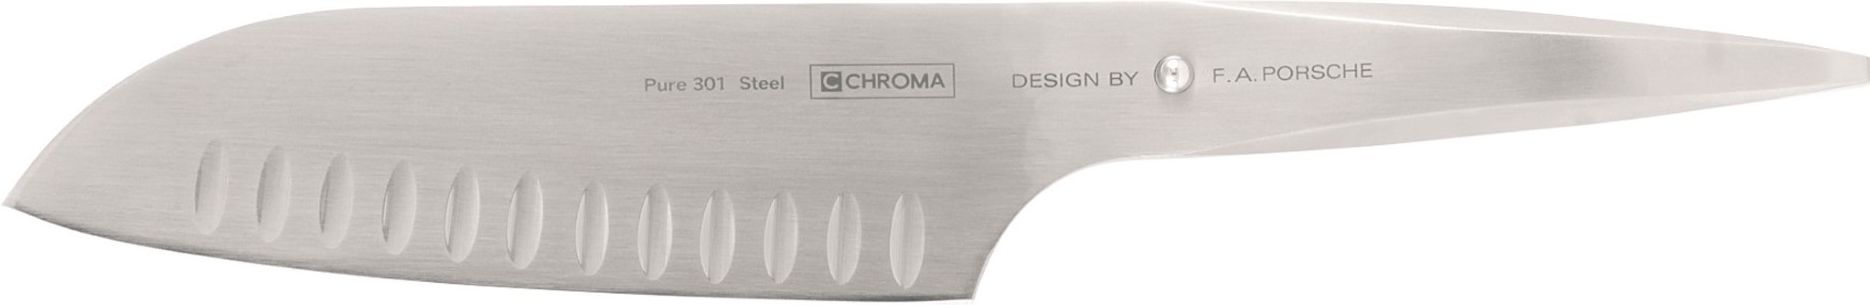 Chroma Knives - 6.5" Hollow Ground Santoku Granton Knife - P21